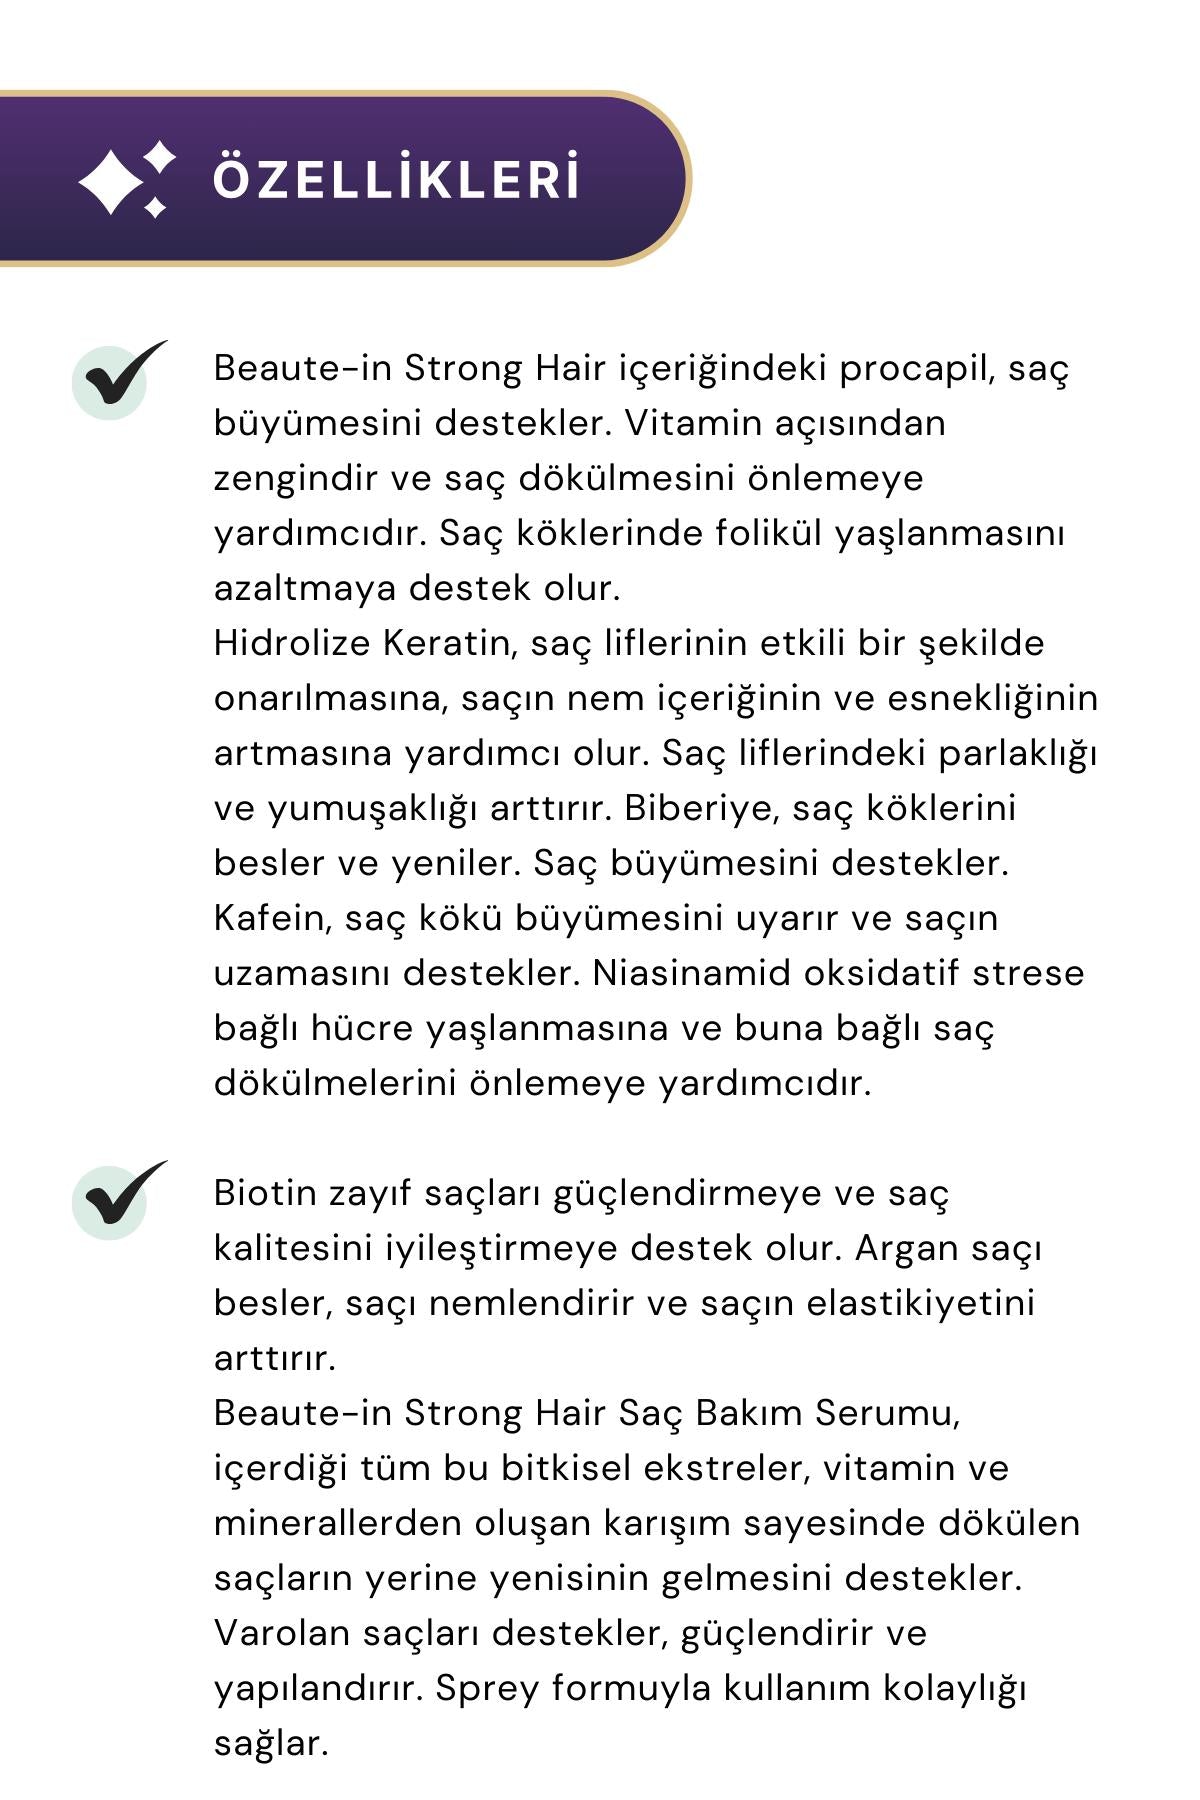 HERBasist Beaute-in Strong Hair Saç Spreyi 60 ml 3'lü Paket